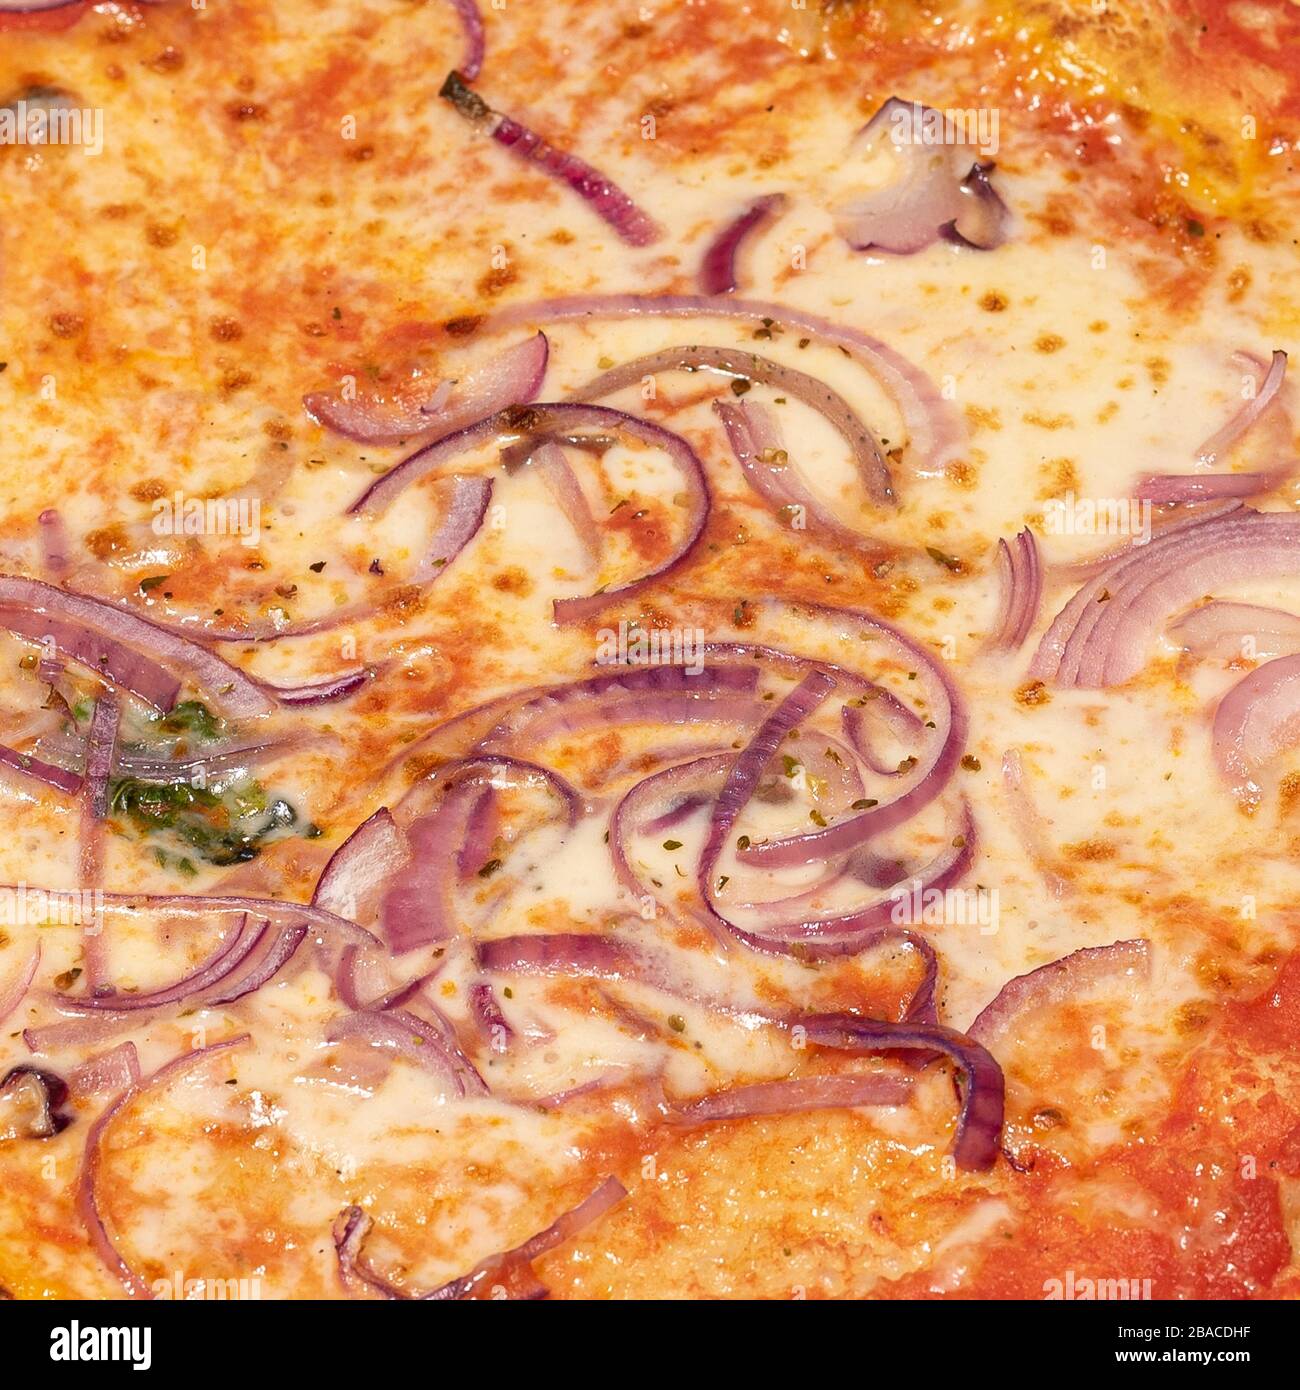 Primo piano di pizza con cipolle, dettaglio del tipico piatto italiano, fotografia gastronomica Foto Stock